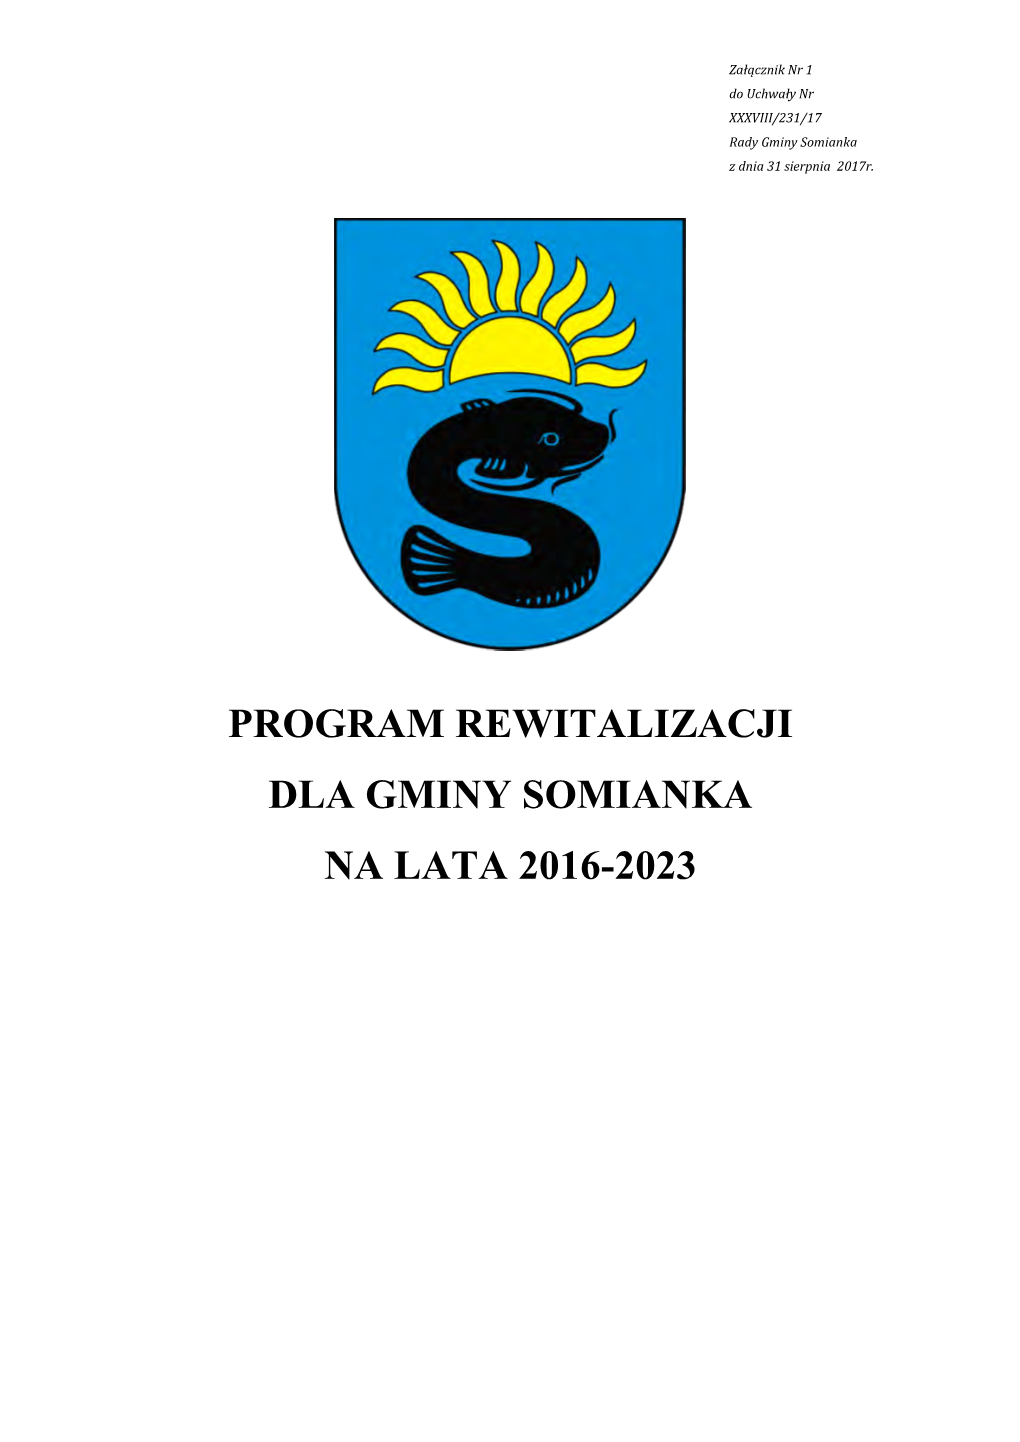 Program Rewitalizacji Dla Gminy Somianka Na Lata 2016-2023